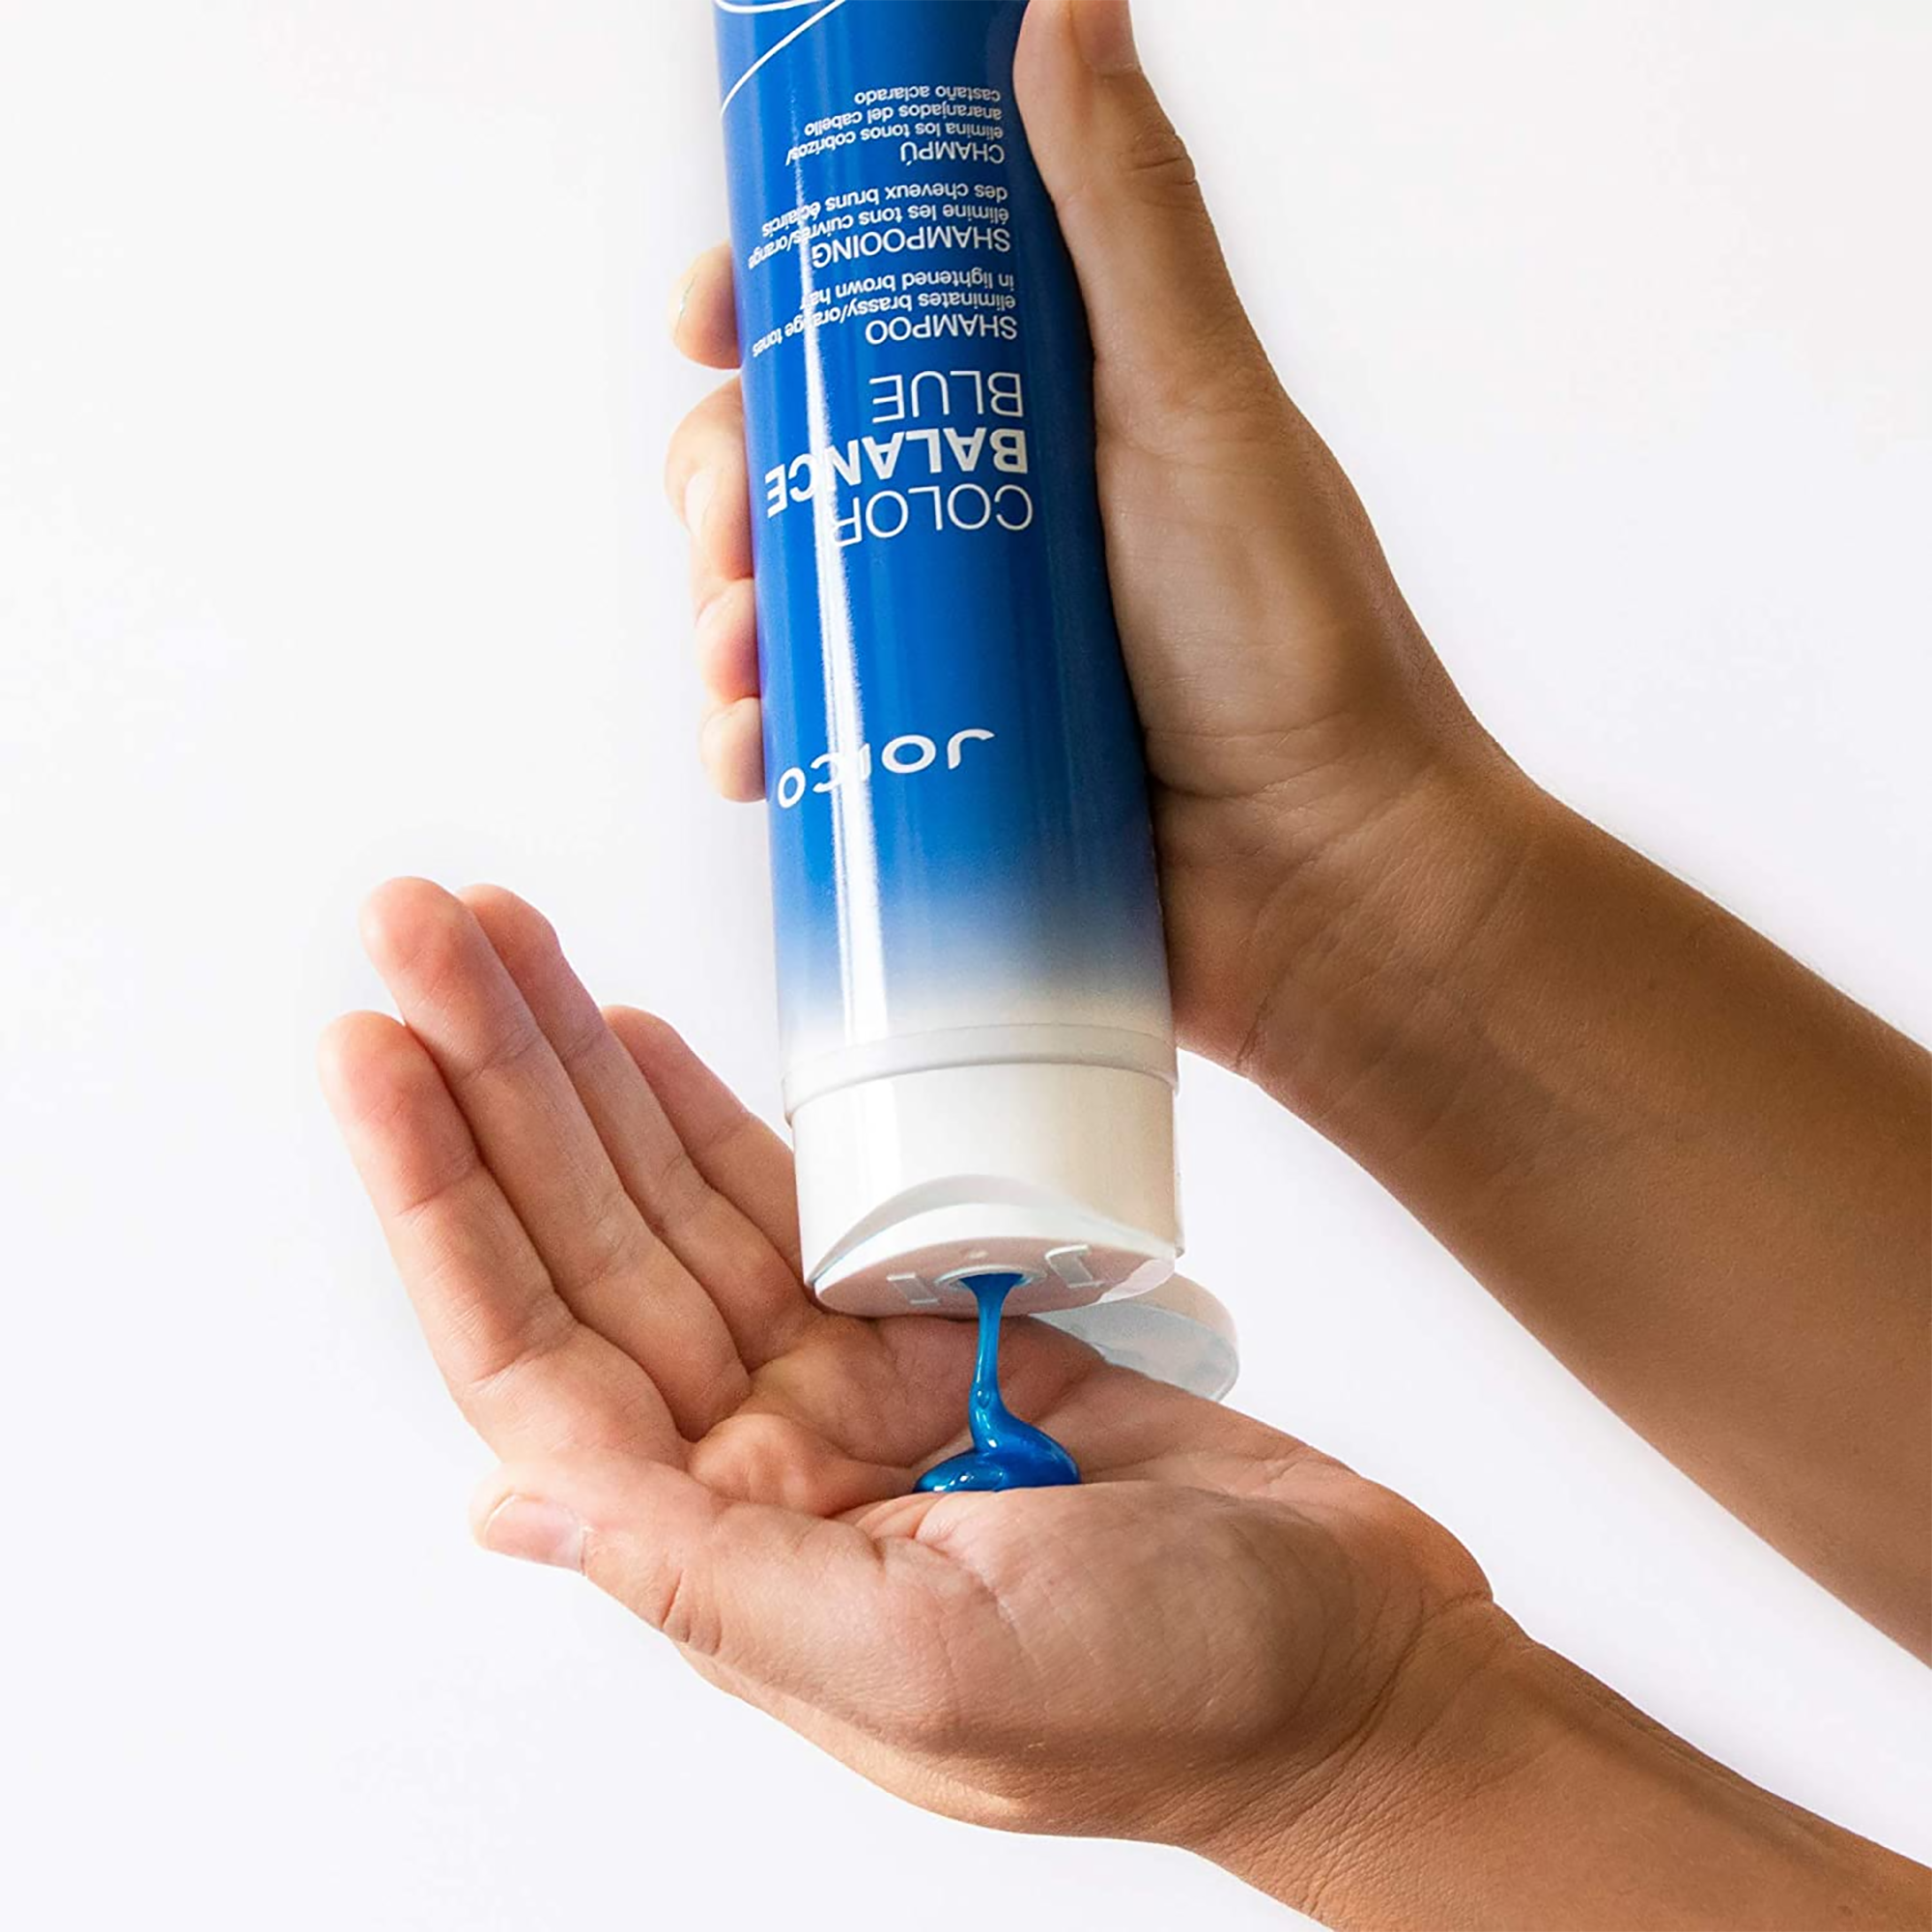 Joico Color Balance Blue Shampoo and Conditioner 10 oz DUO ($42.50 VALUE) / 10.OZ